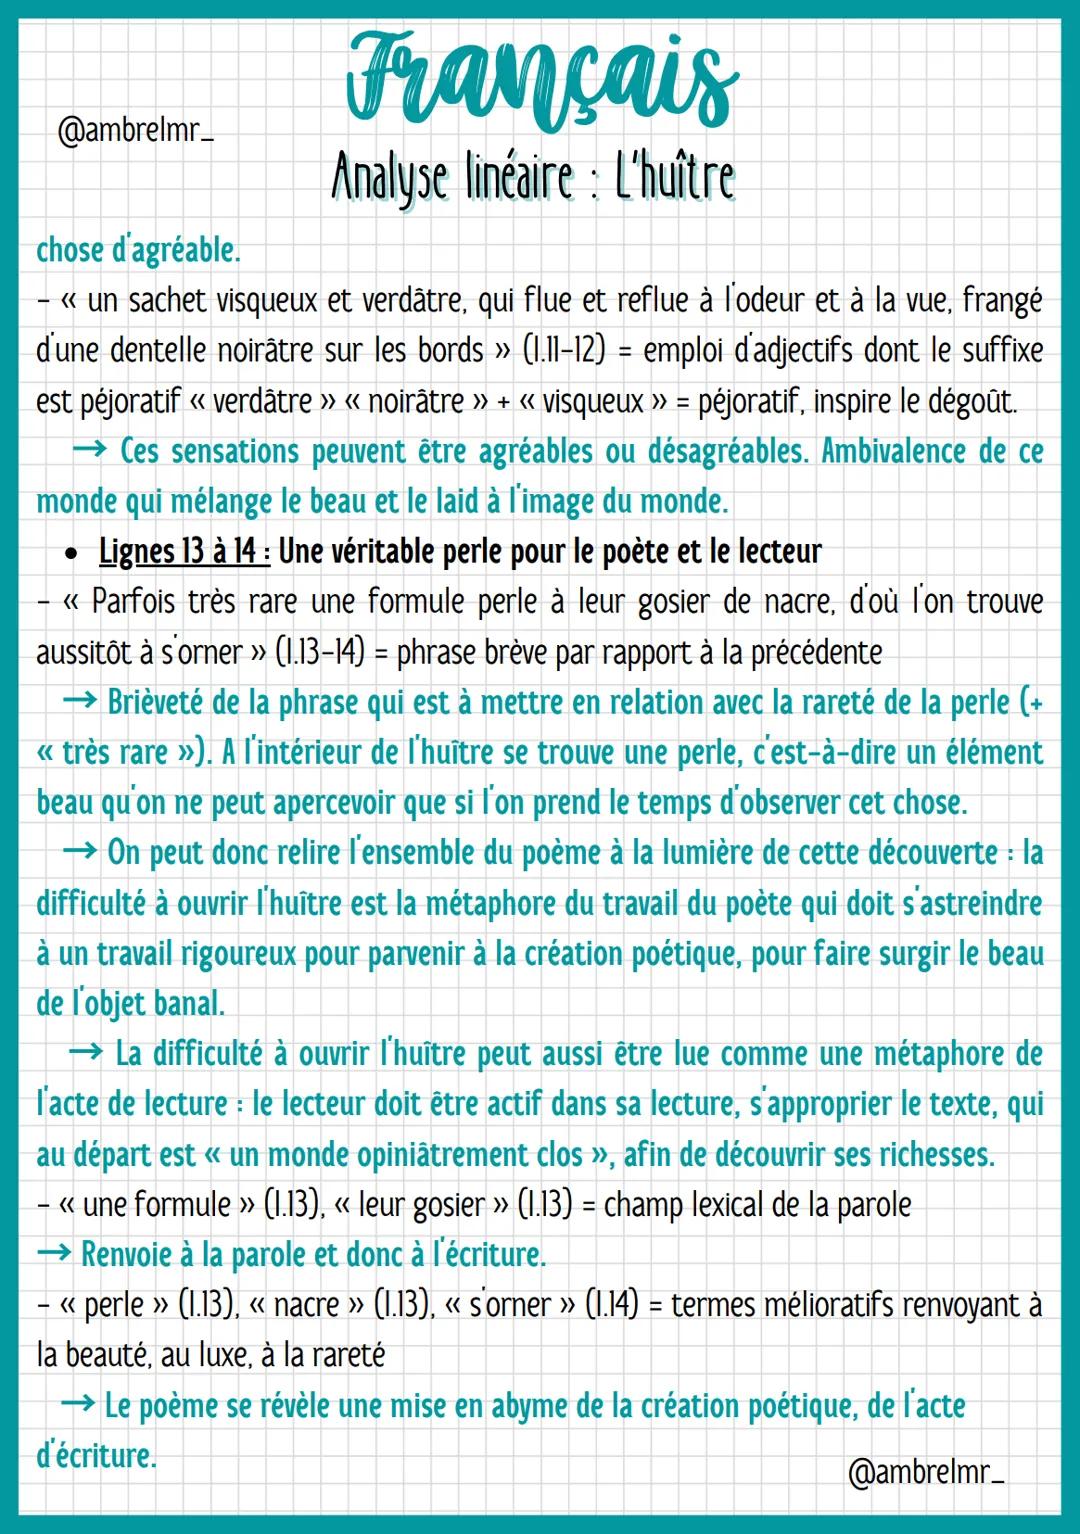 @ambrelmr_
INTRODUCTION
Français
Analyse linéaire : L'huître
Présentation du texte :
→ Auteur : Francis Ponge a vécu pendant les deux guerre